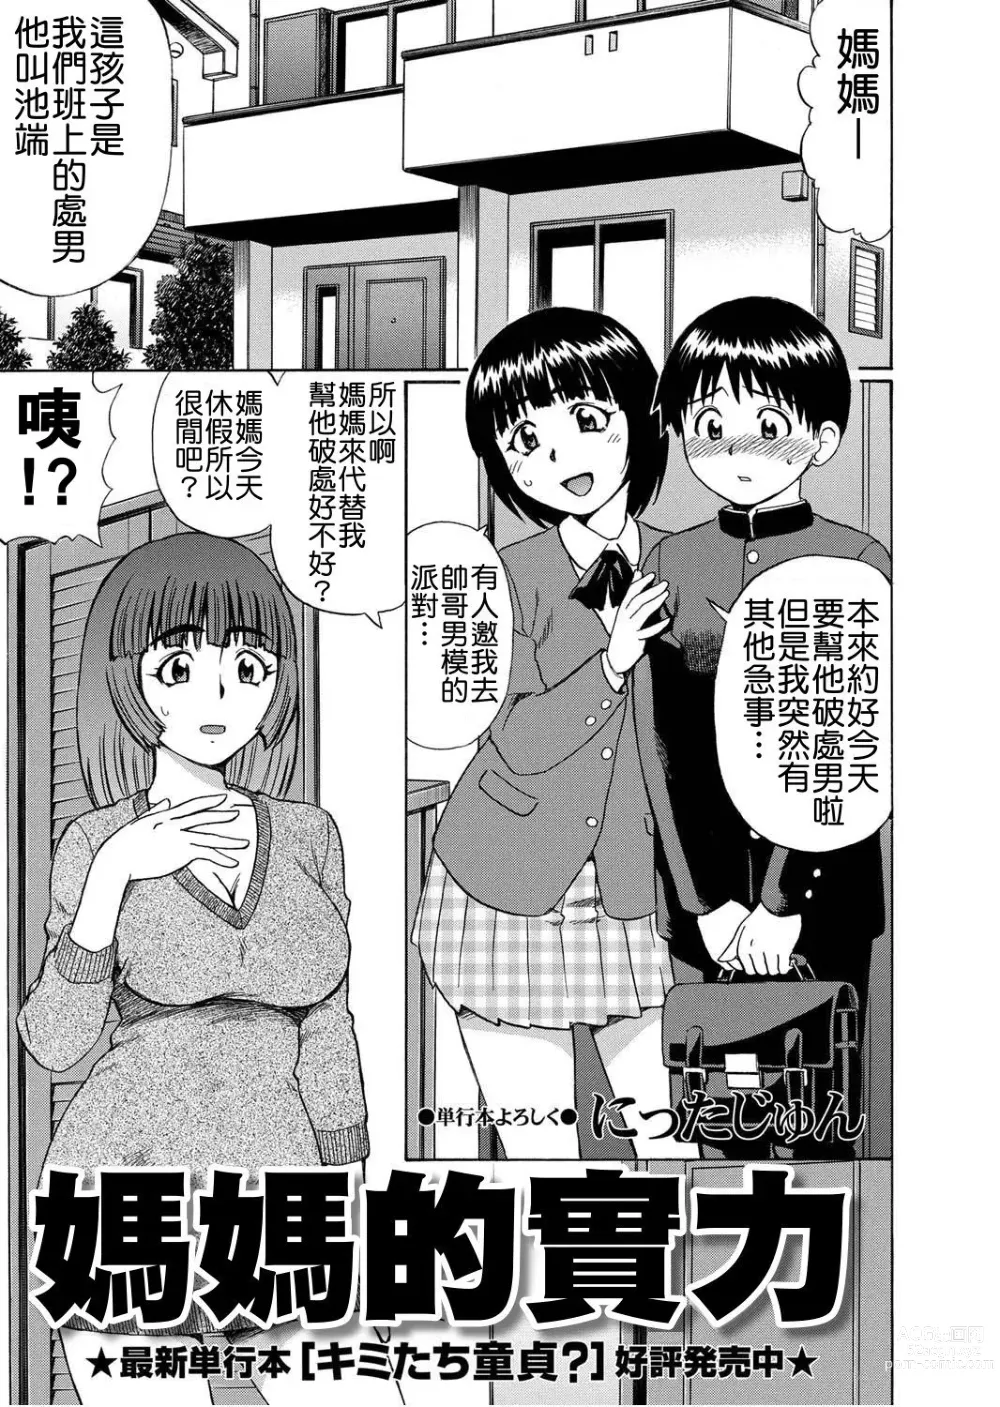 Page 1 of manga 媽媽的實力